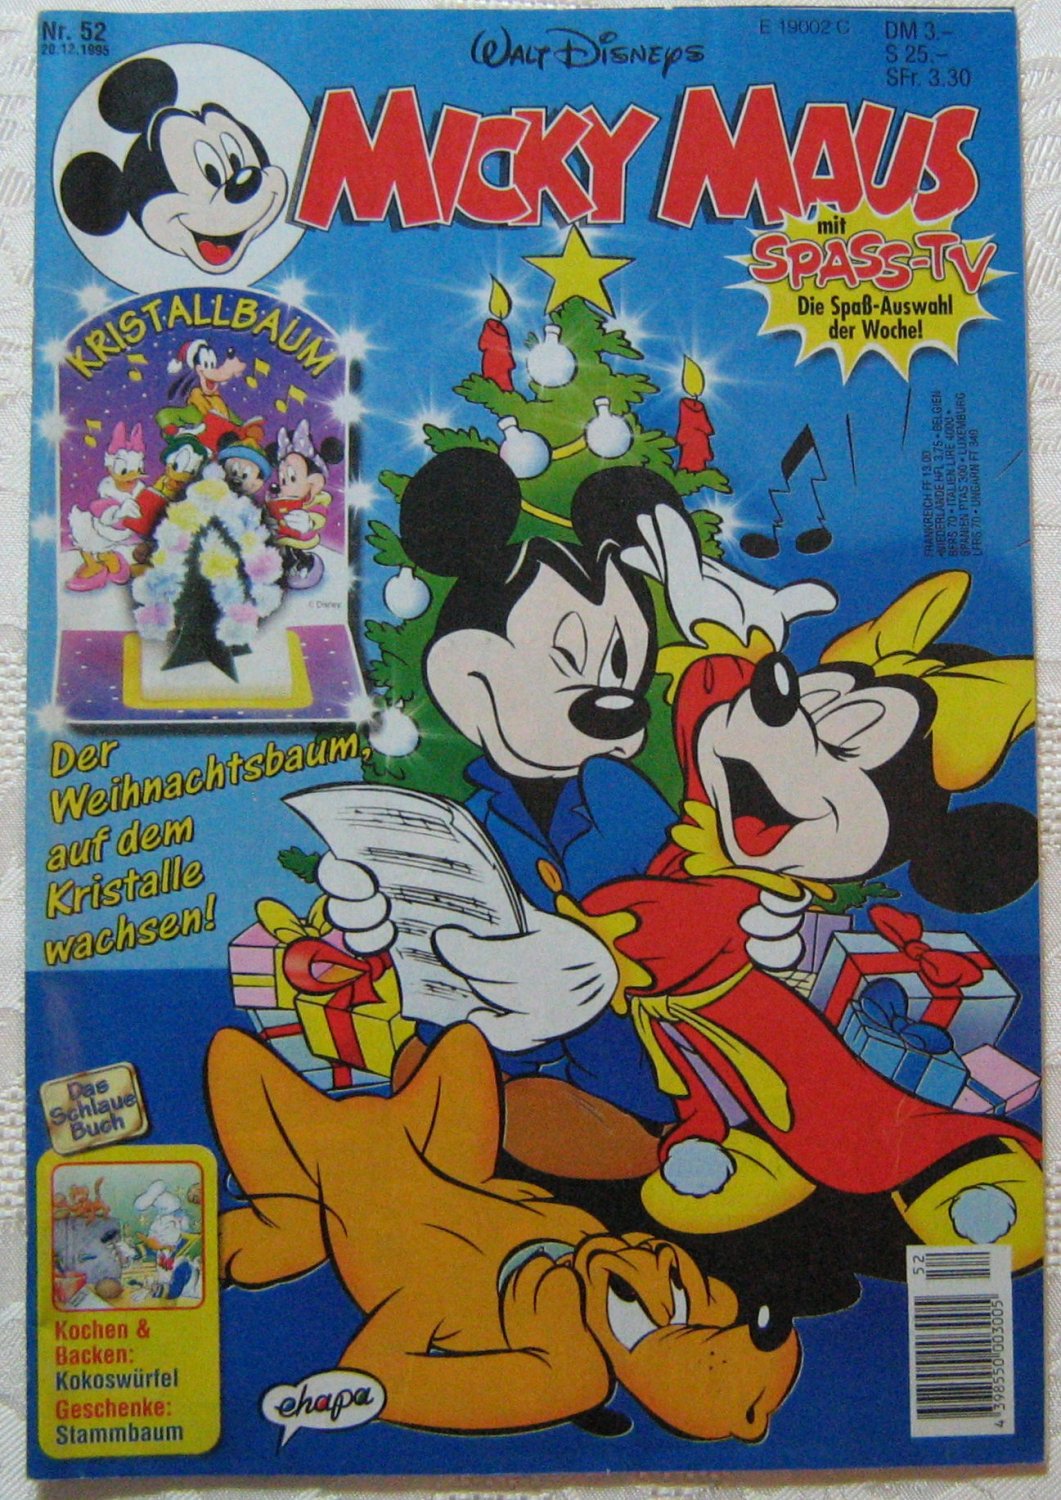 https://images.booklooker.de/x/01FLaN/Walt-Disney+Micky-Maus-Heft-Nr-52-1995.jpg